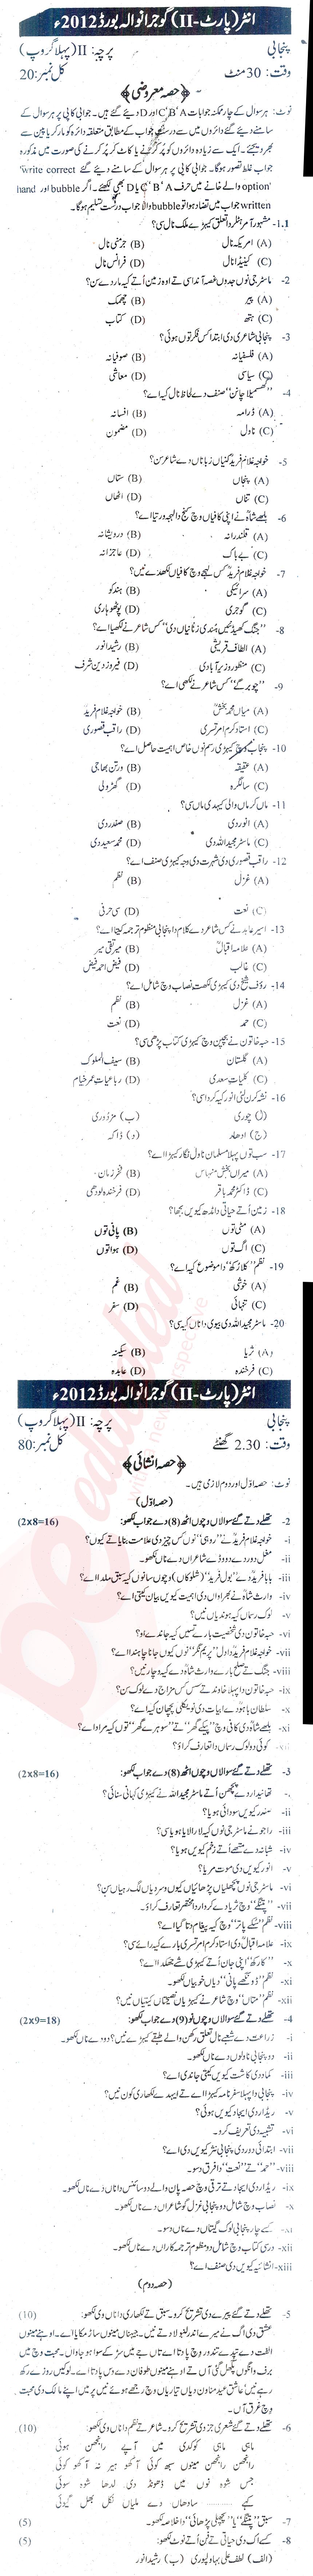 Punjabi FA Part 2 Past Paper Group 1 BISE Gujranwala 2012